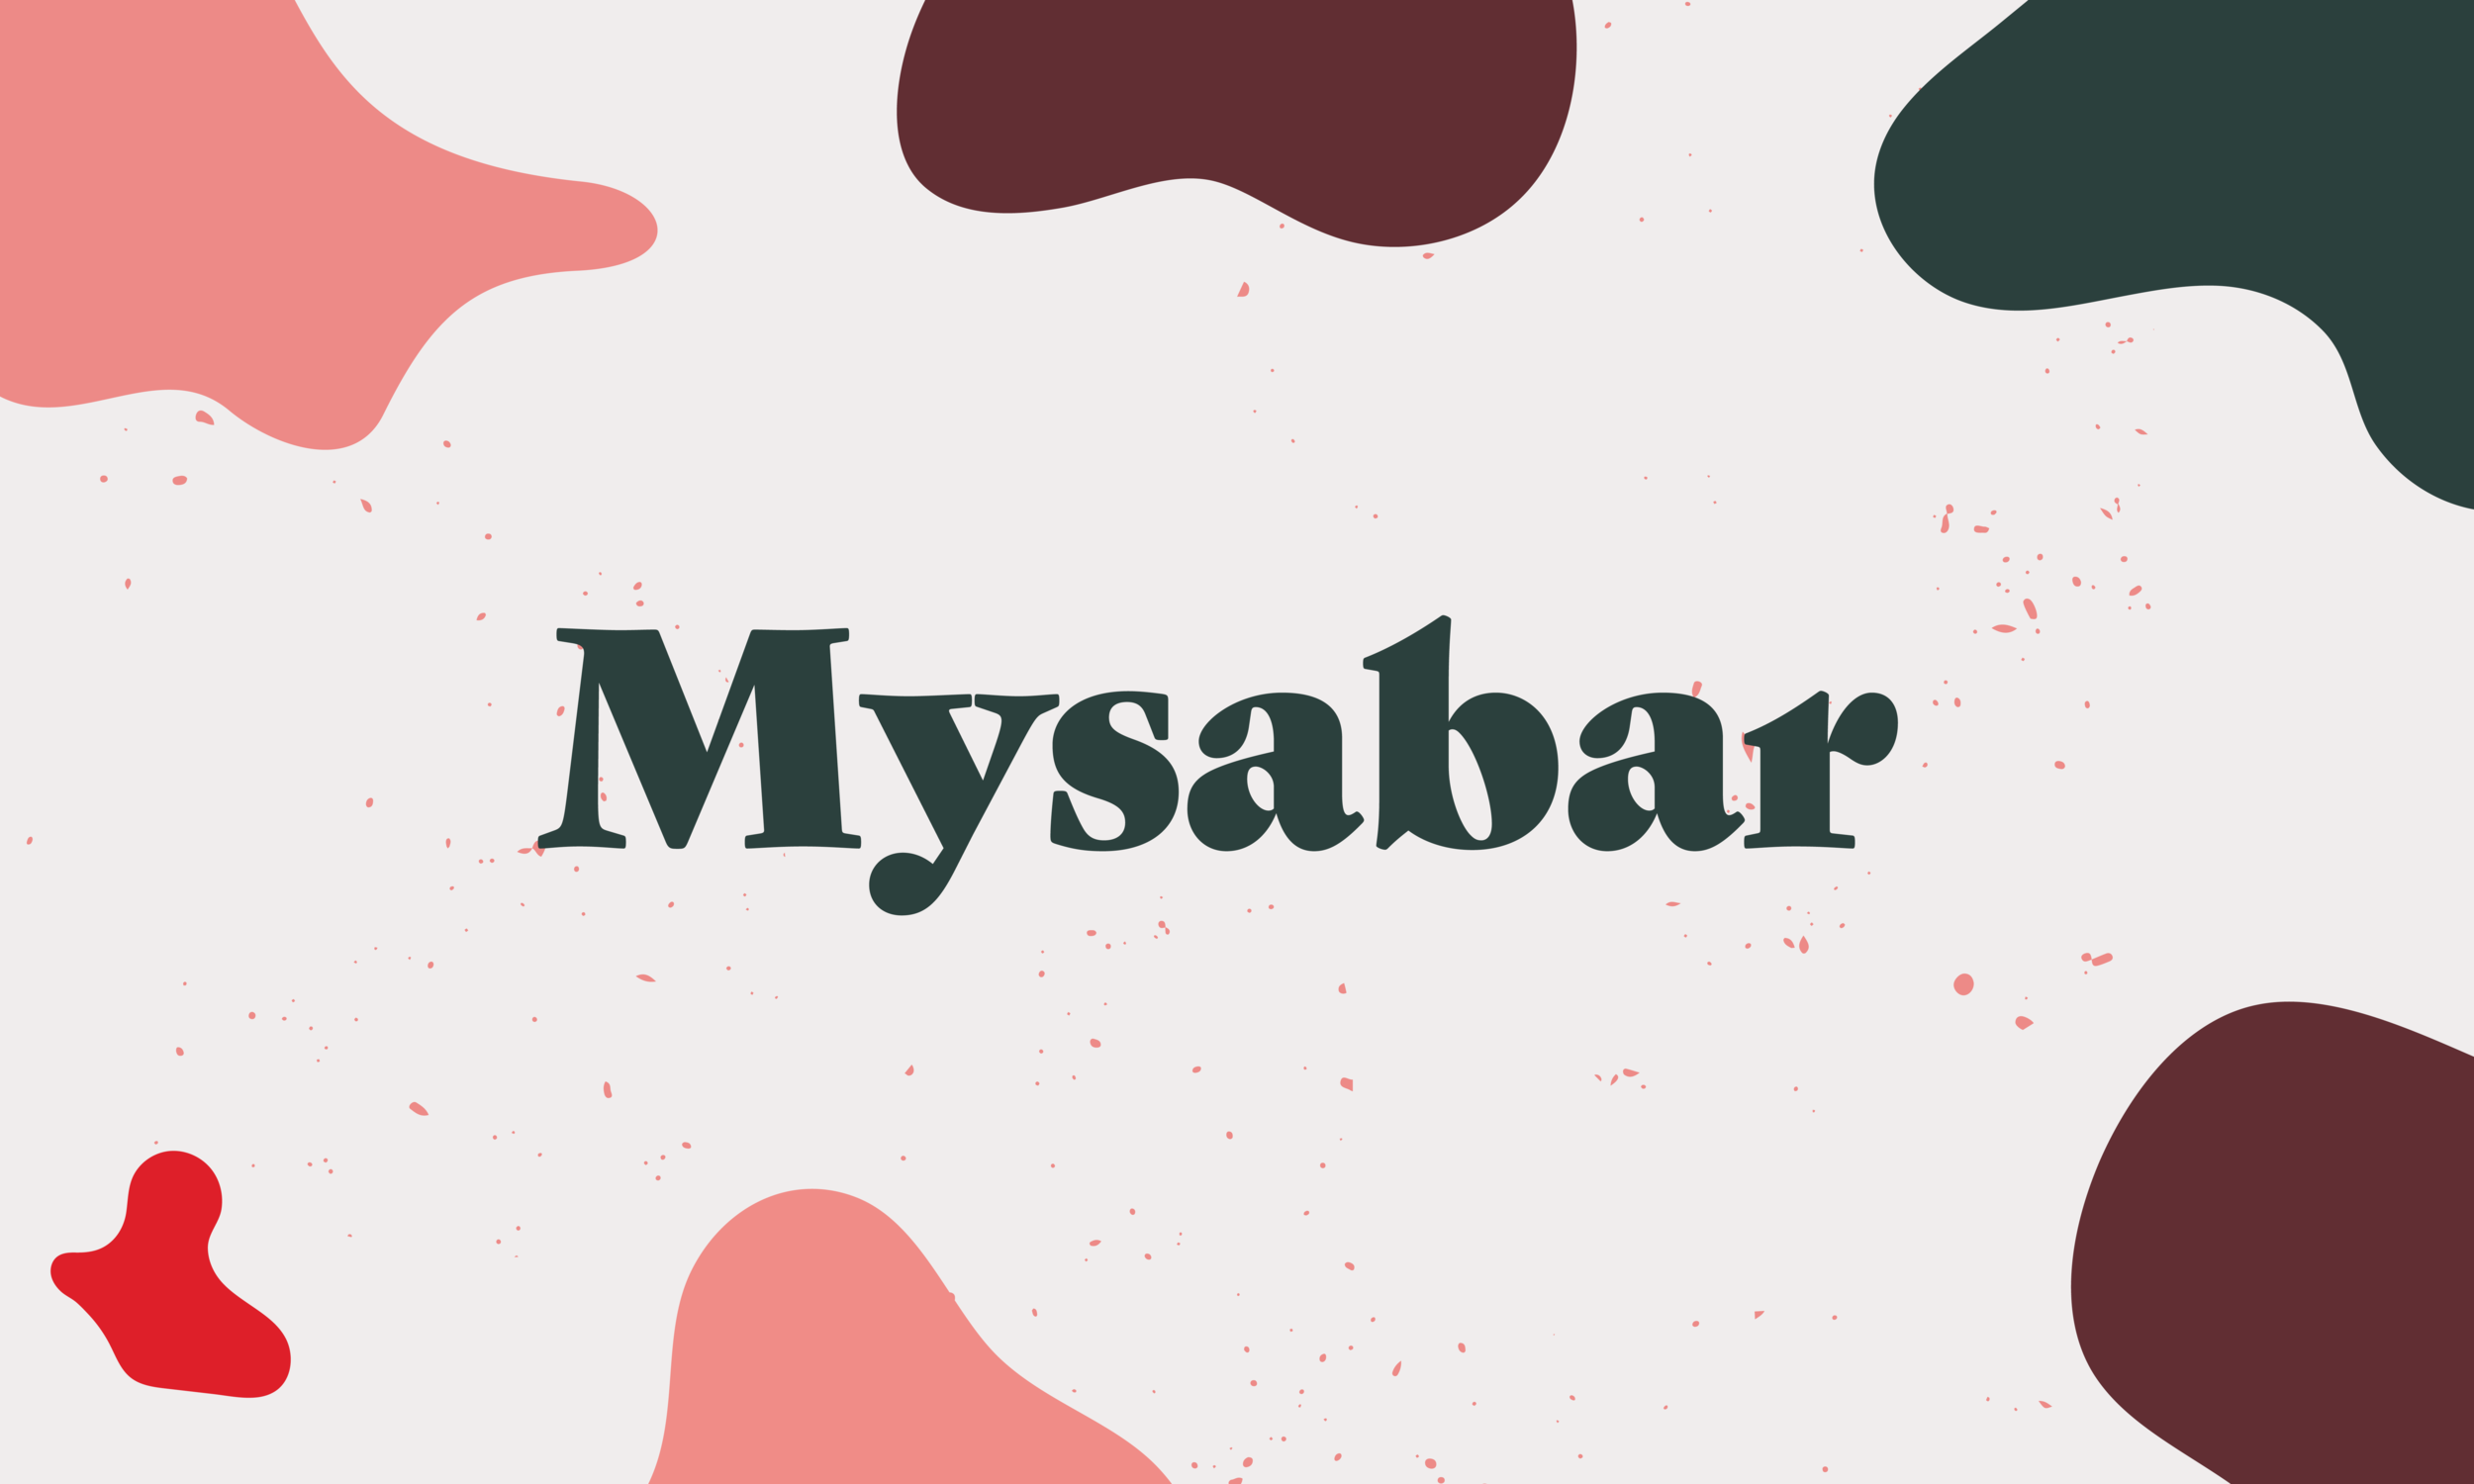 Client: Mysabar